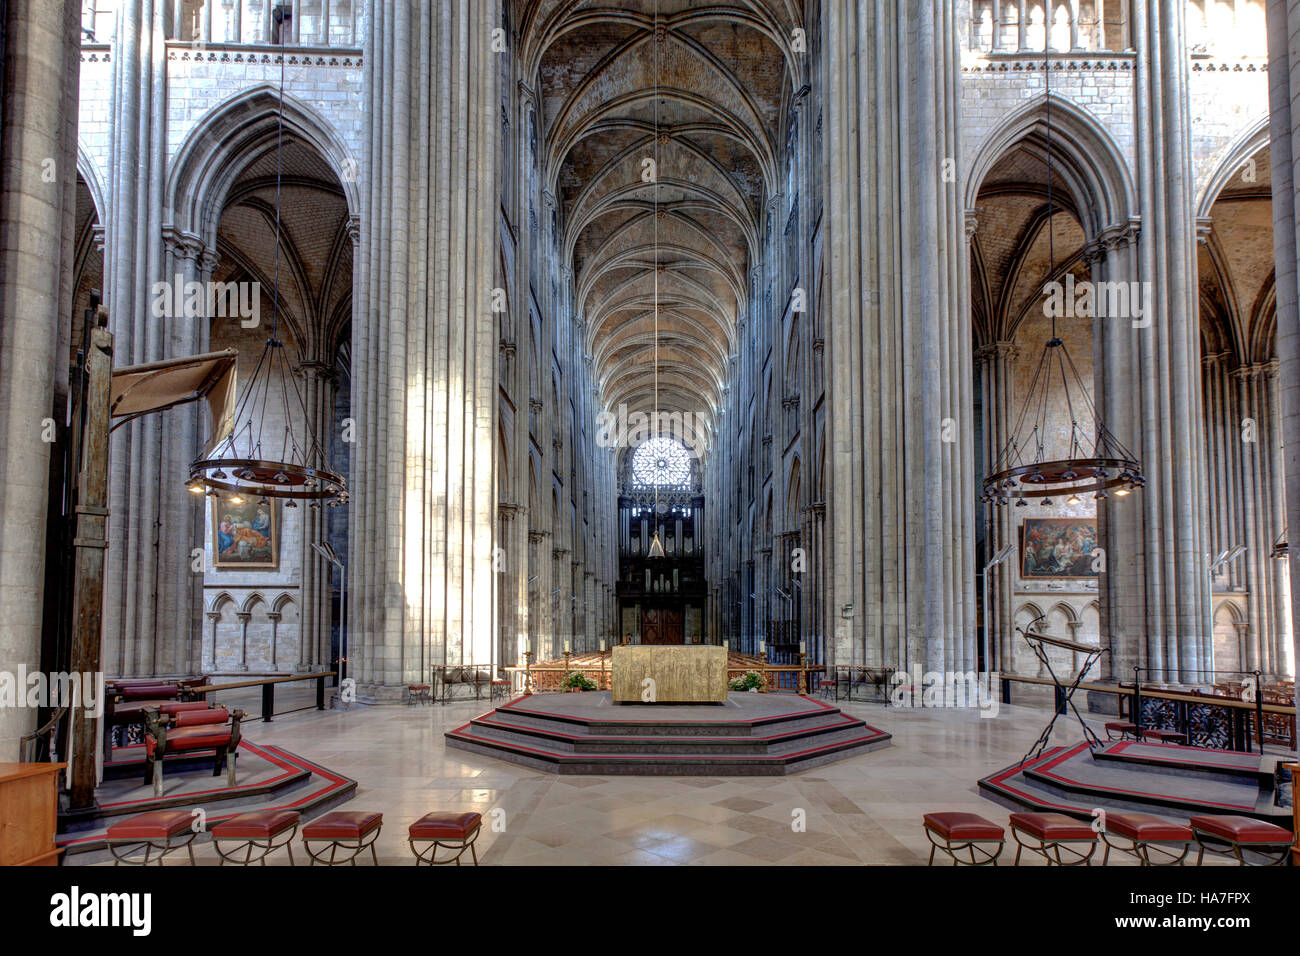 Rouen (nord de la France) : Notre-Dame de la cathédrale de Rouen Banque D'Images